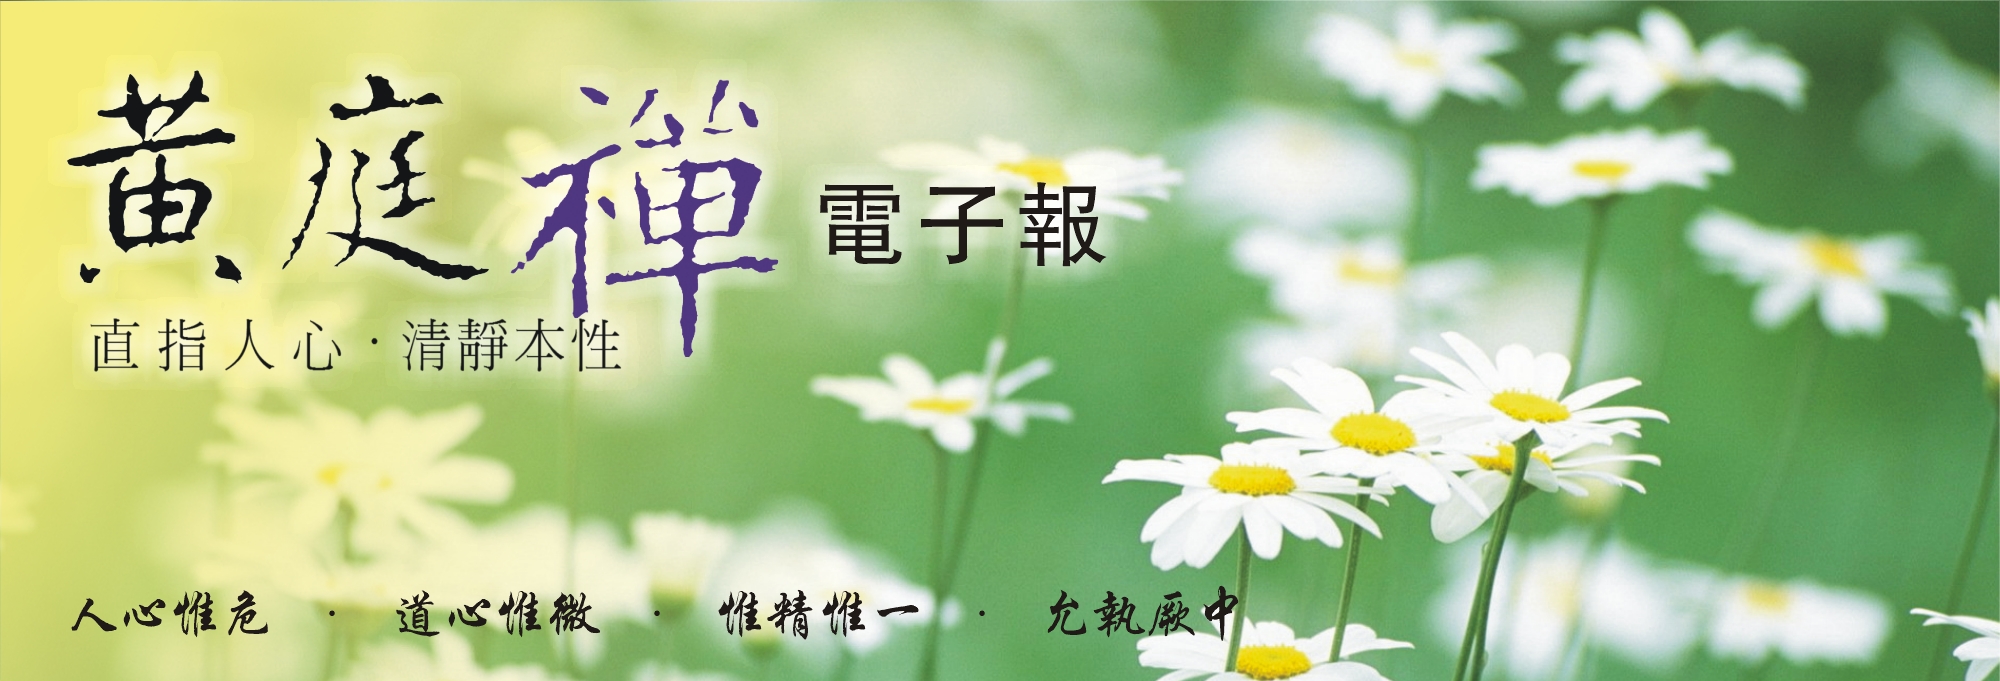 中華黃庭禪學會2014.05.21電子報